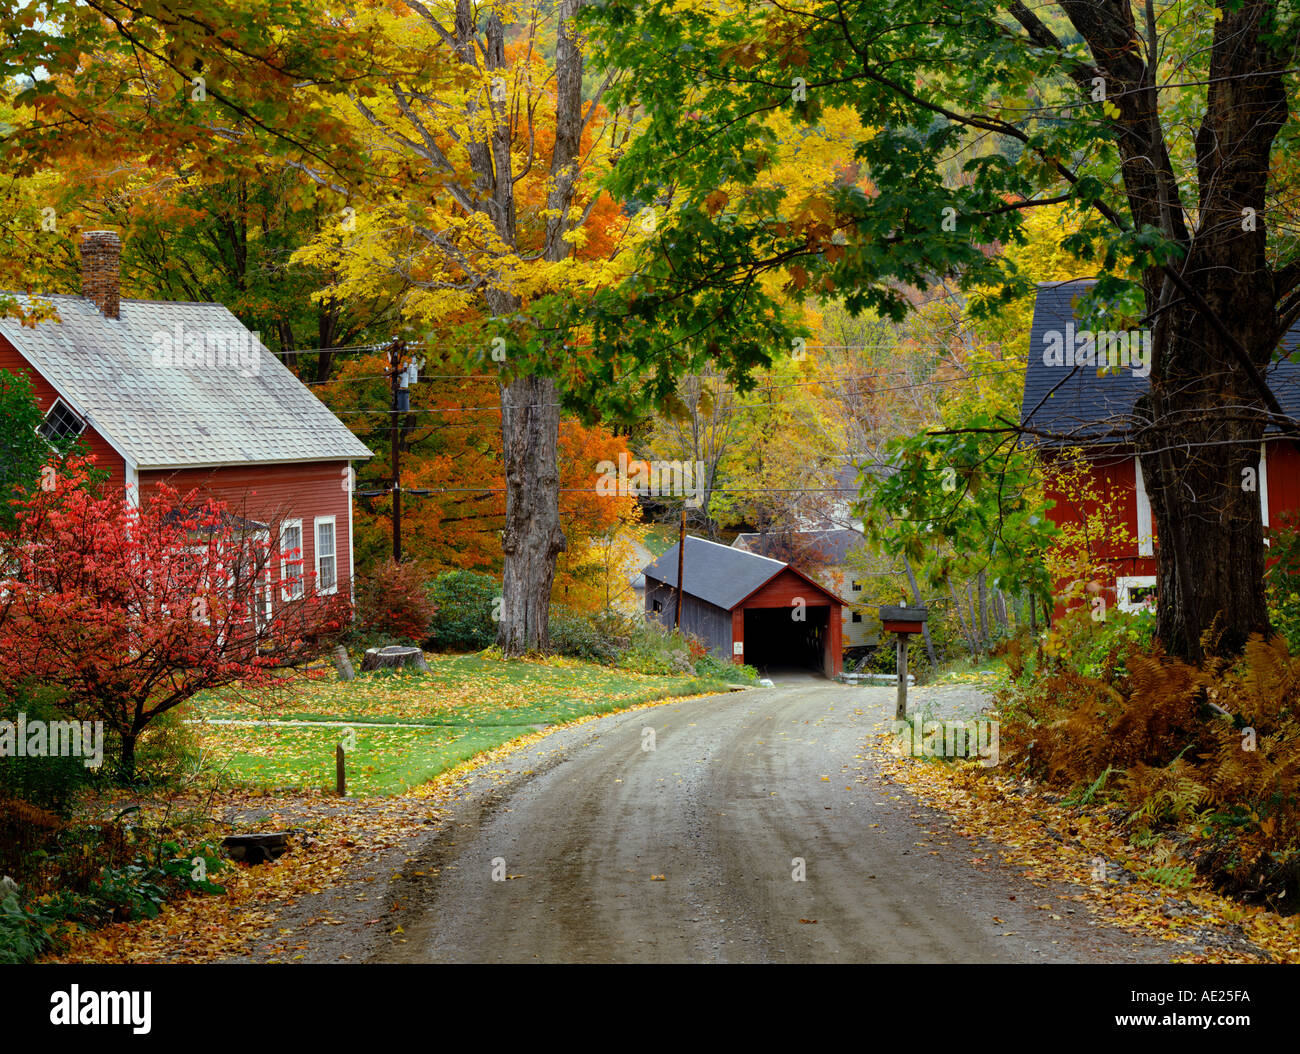 Villaggio in Vermont USA con ponte coperto e caduta delle foglie Foto Stock